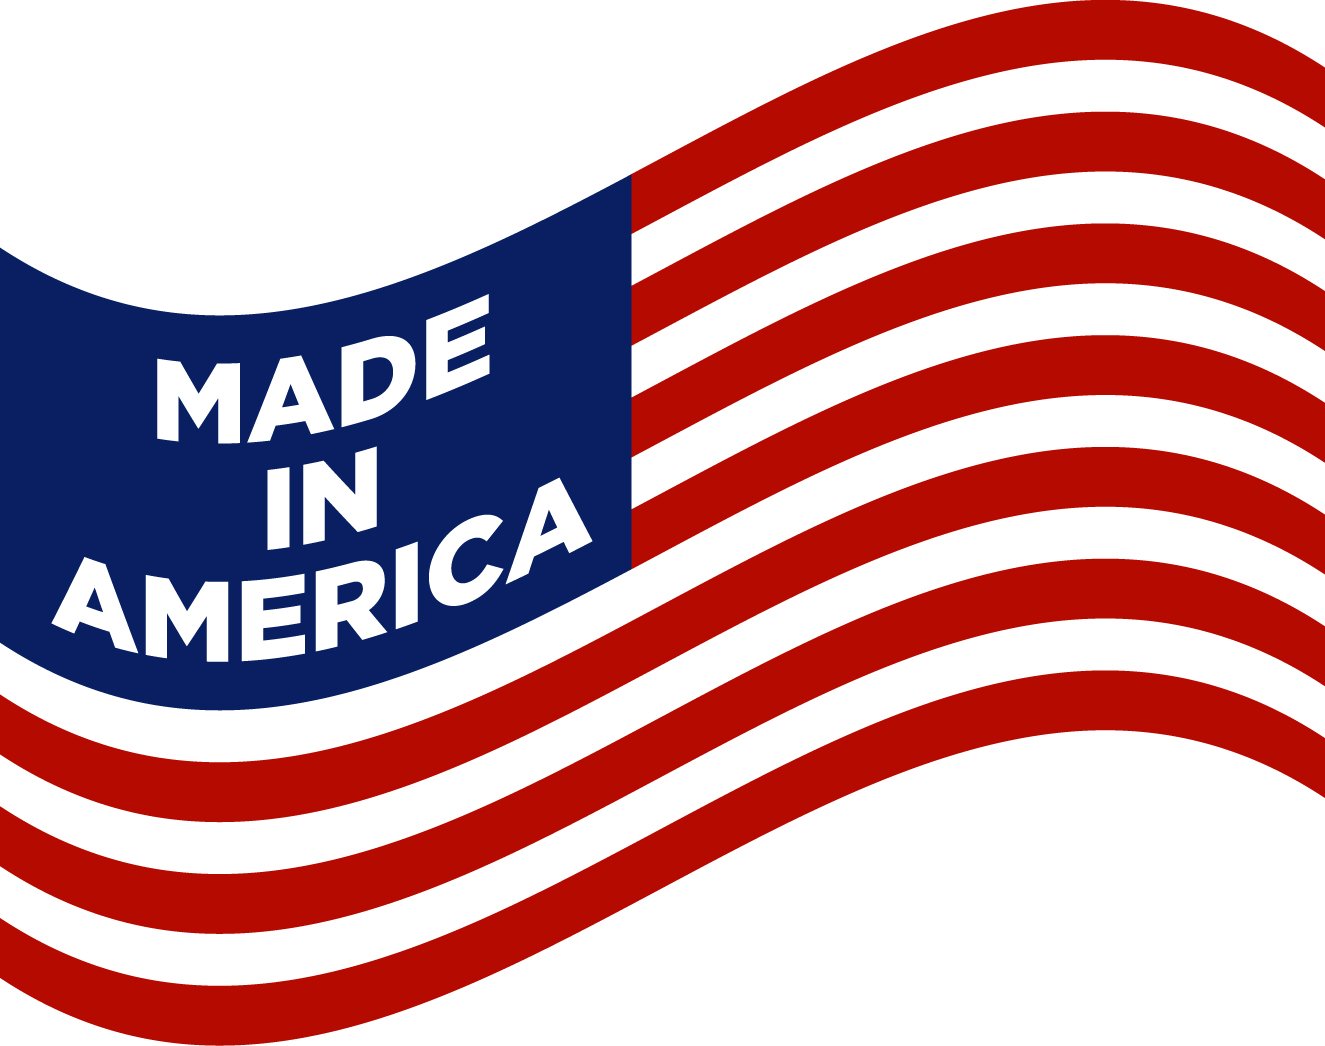 American flag clipart free usa flag - Cliparting.com